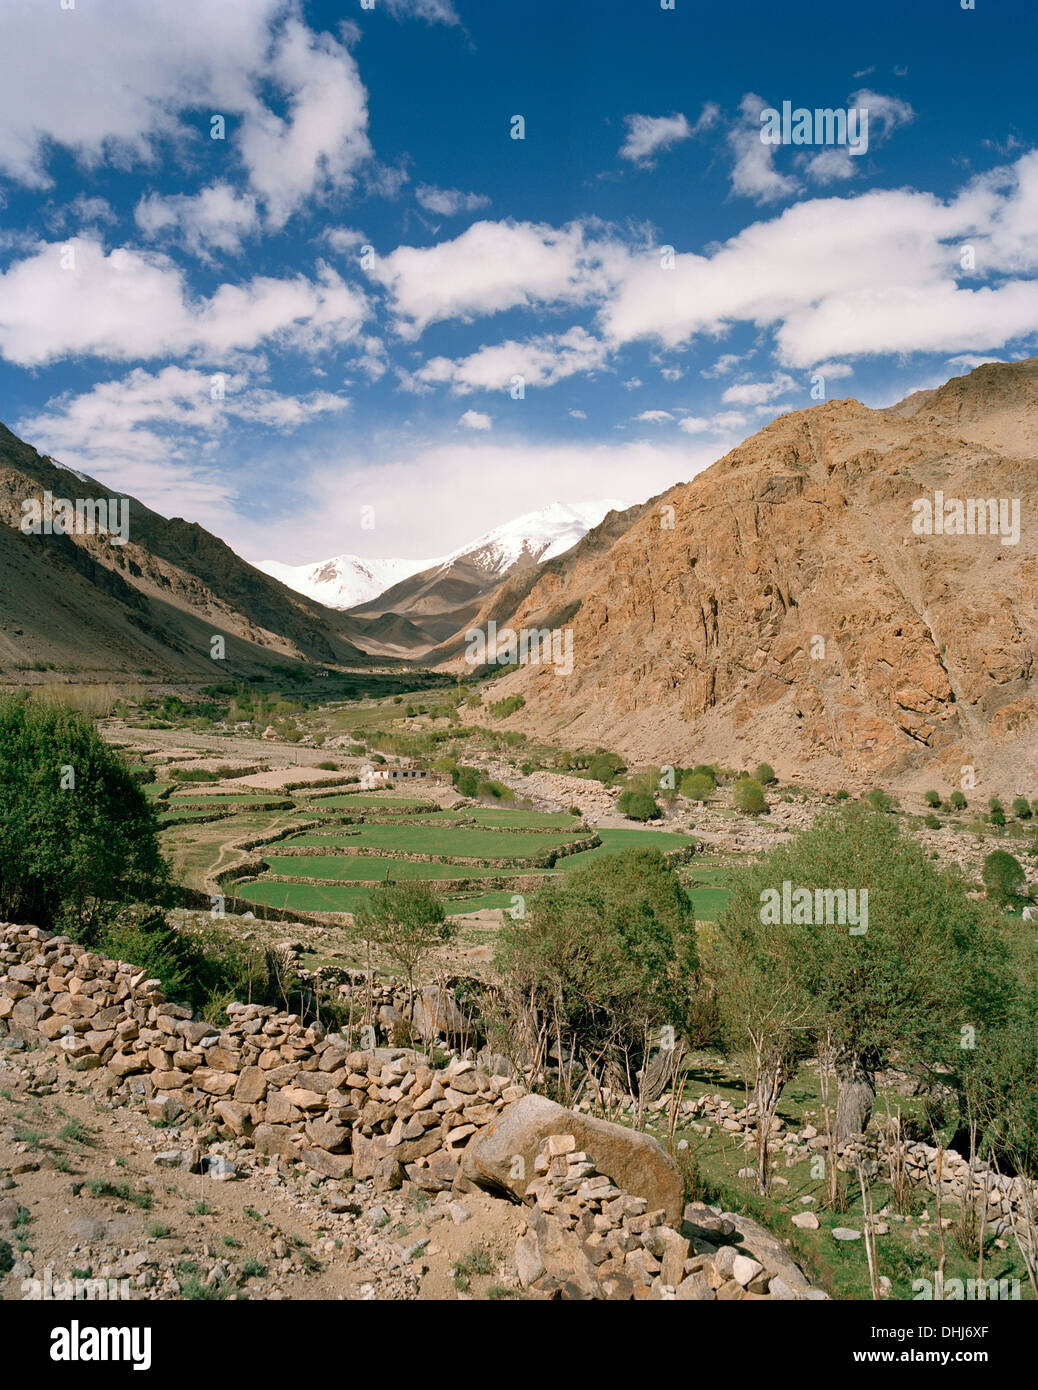 Terrasse-Felder und Bauernhof beherbergt über dem Kloster Thagchockling im Dorf Ney, westlich von Leh, Ladakh, Jammu und Kaschmir, Indien Stockfoto